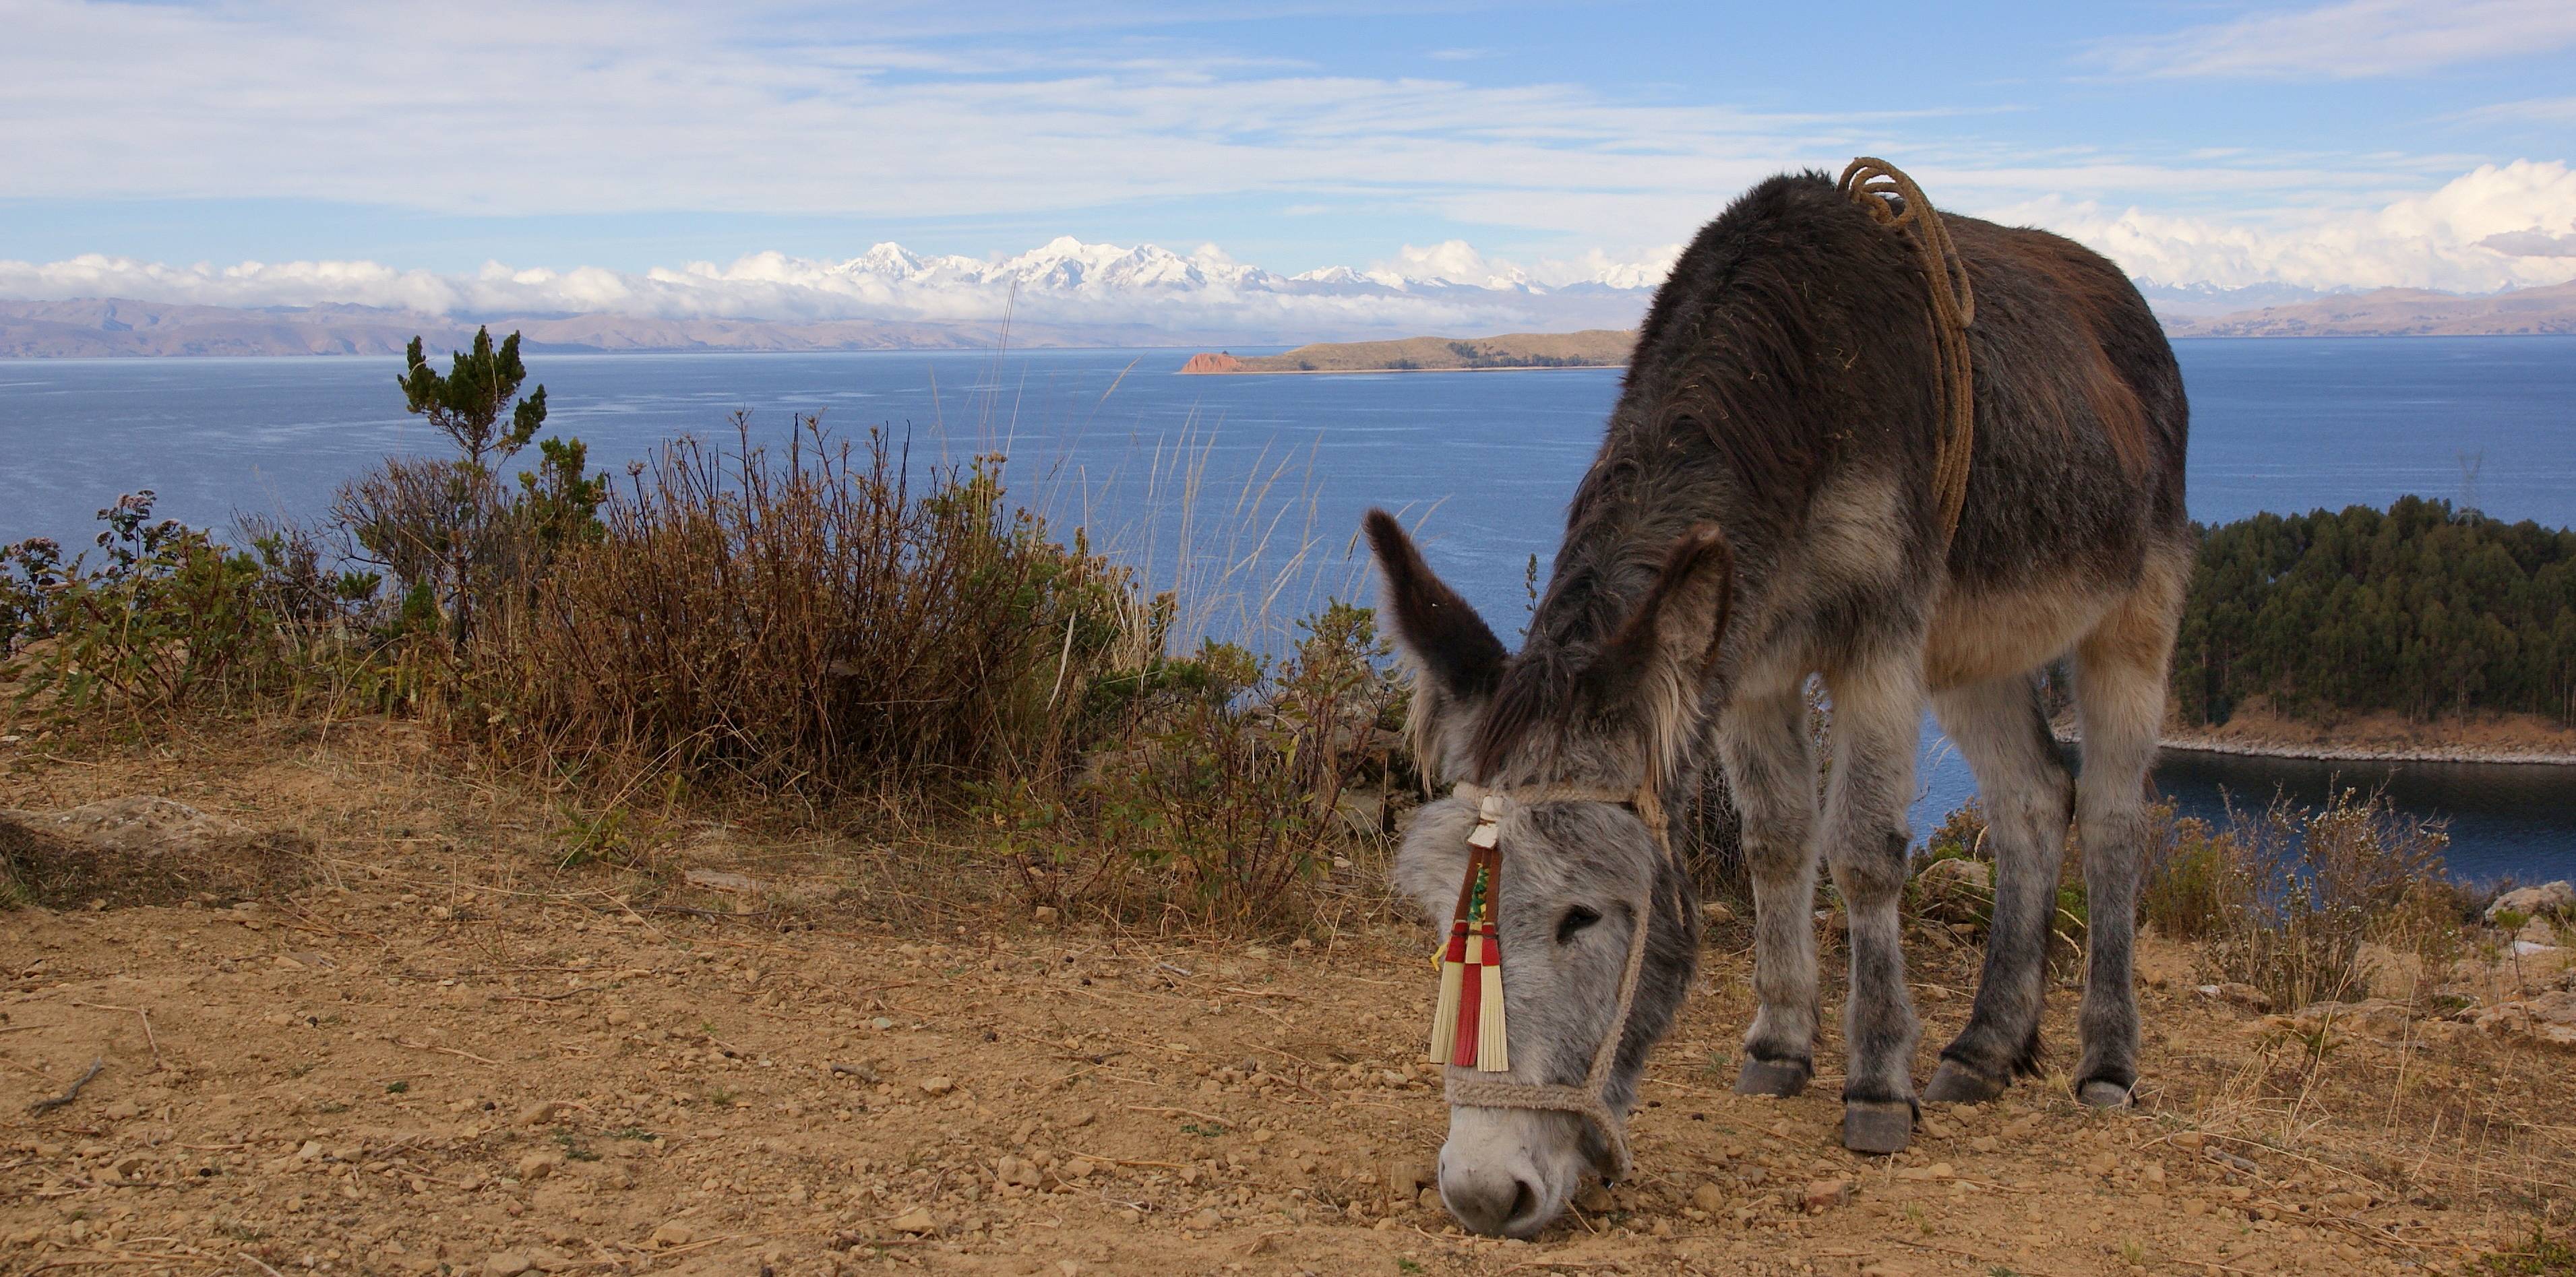 Da La Paz al Salar de Uyuni, un incredible viaggio